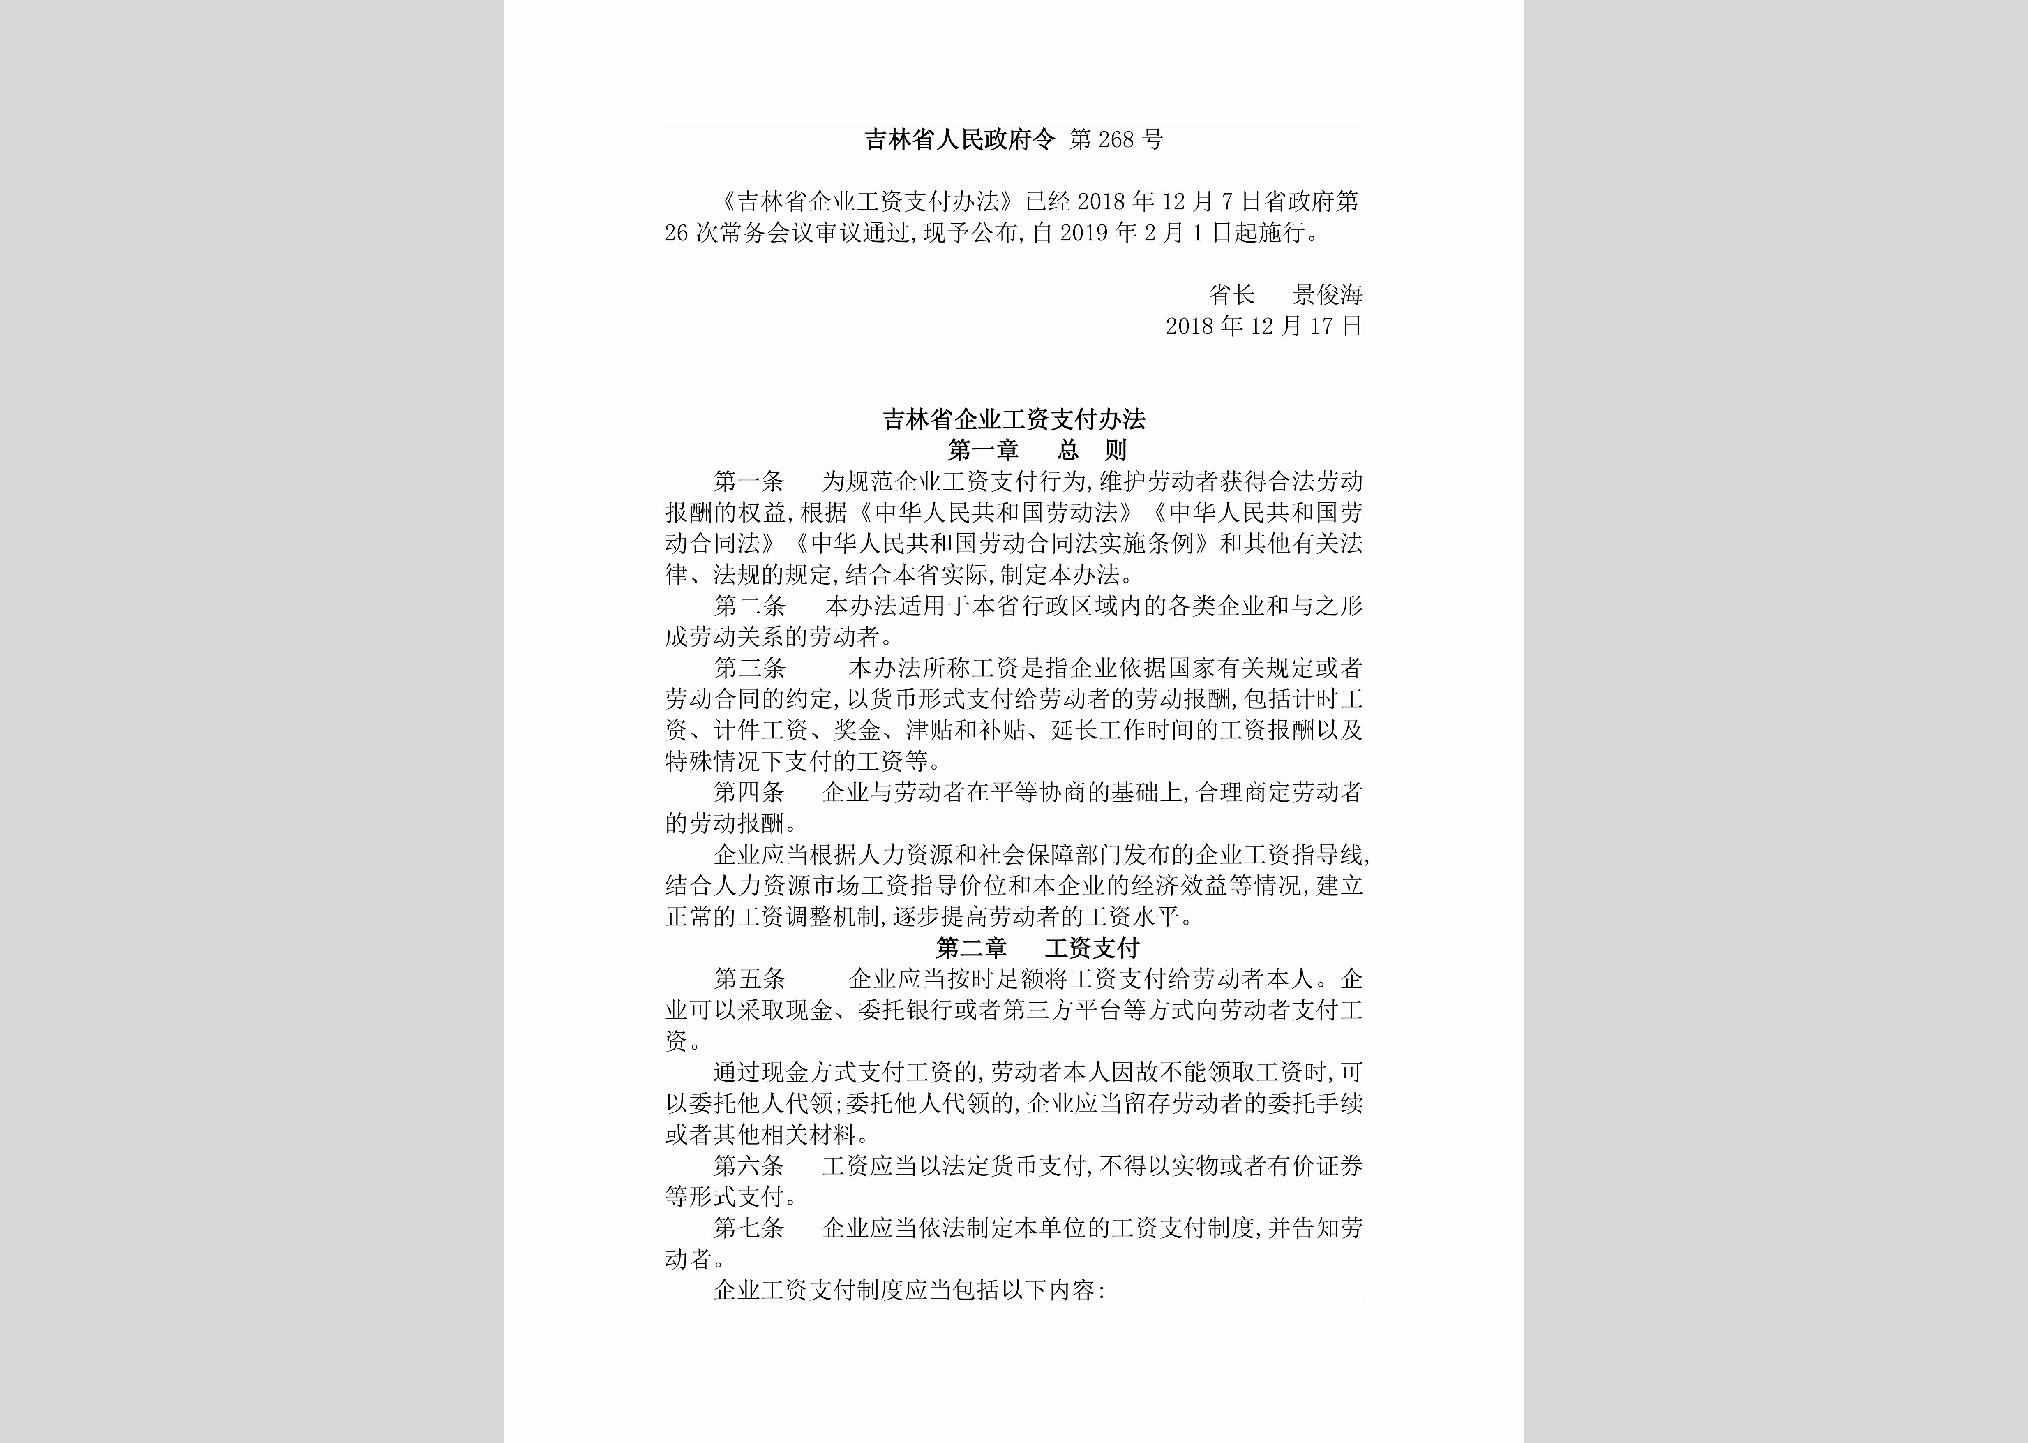 吉林省人民政府令第268号：《吉林省企业工资支付办法》